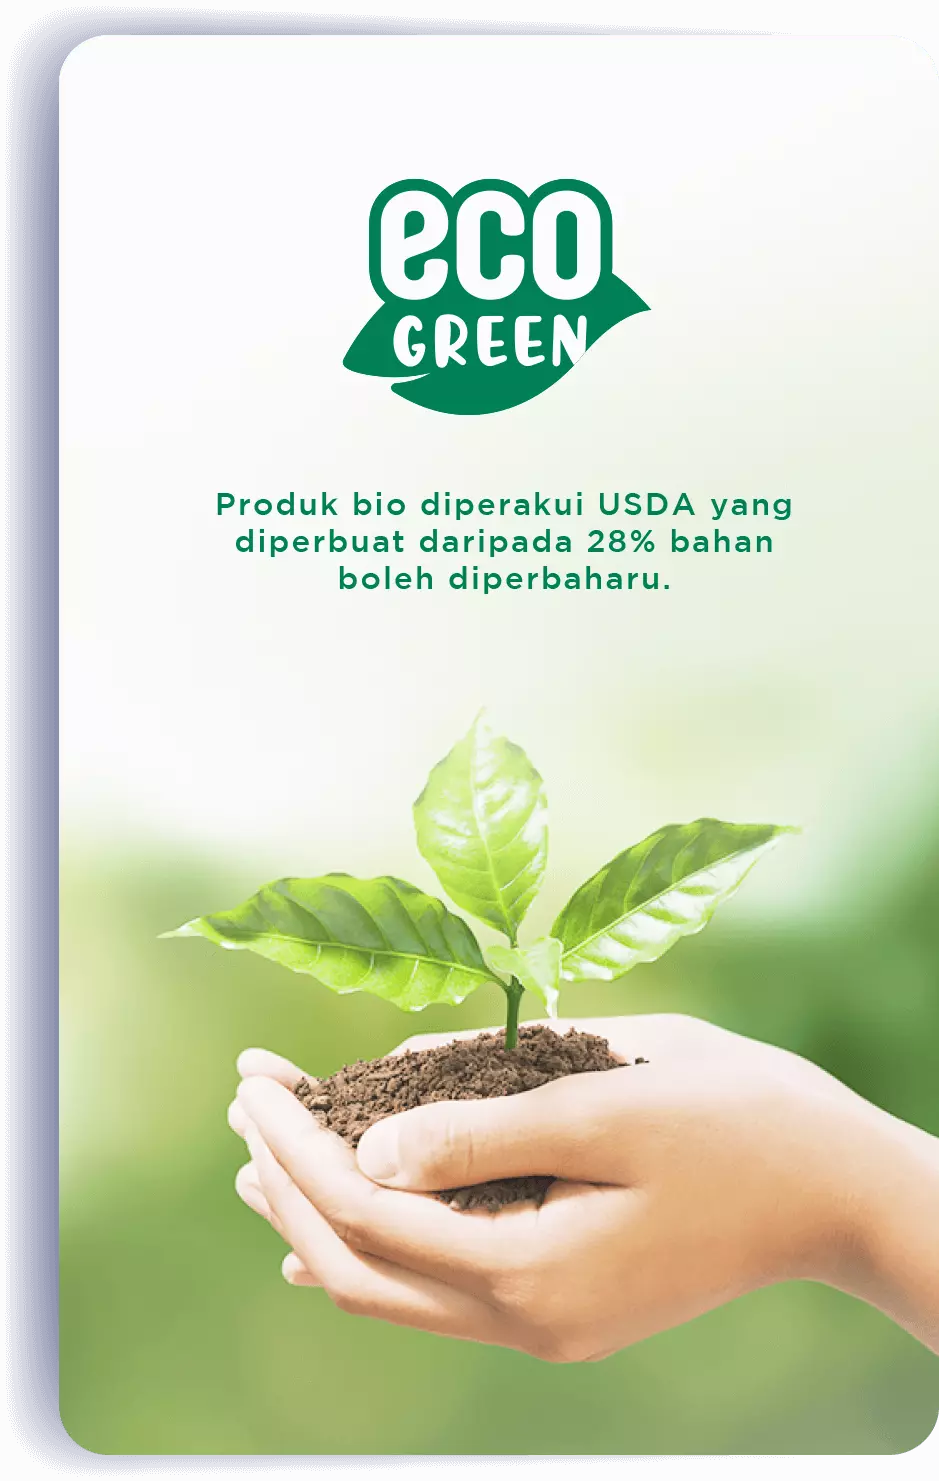 eco GREEN: Produk bio diperakui USDA yang diperbuat daripada 28% bahan boleh diperbaharu.